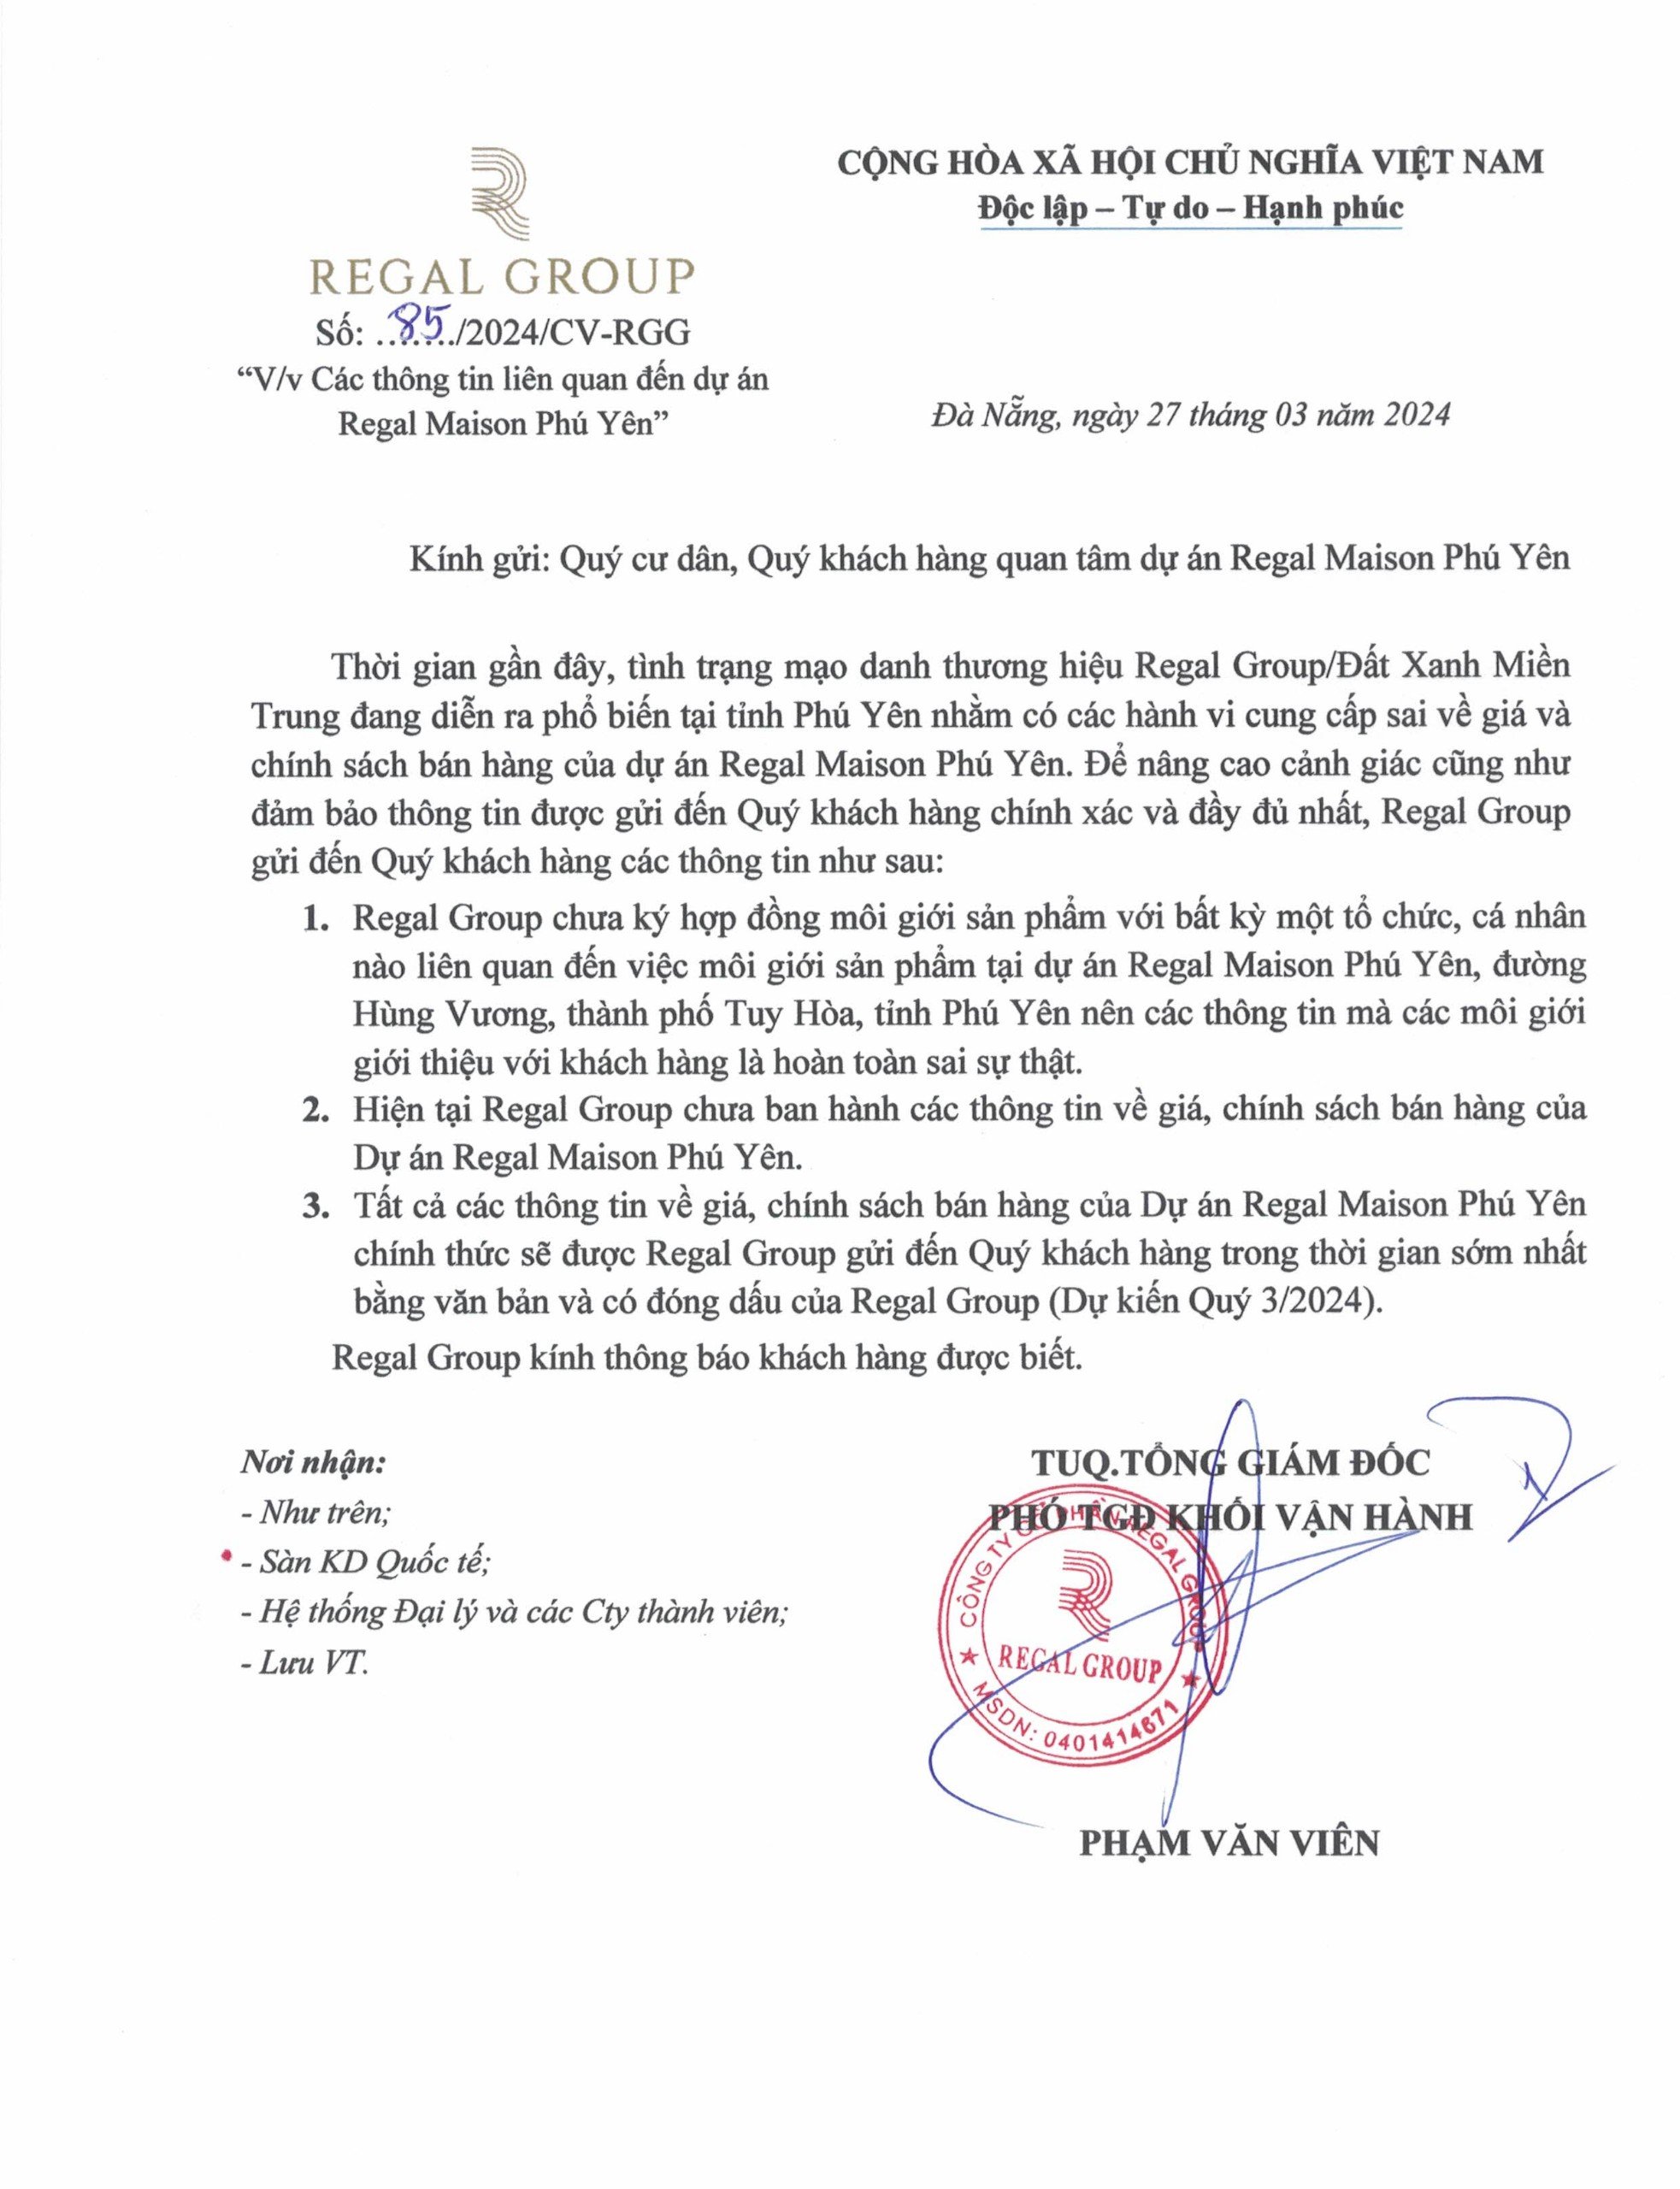 Regal Group thông tin về tình trạng mạo danh thương hiệu Regal Group/Đất Xanh Miền Trung tại dự án Regal Maison Phu Yen